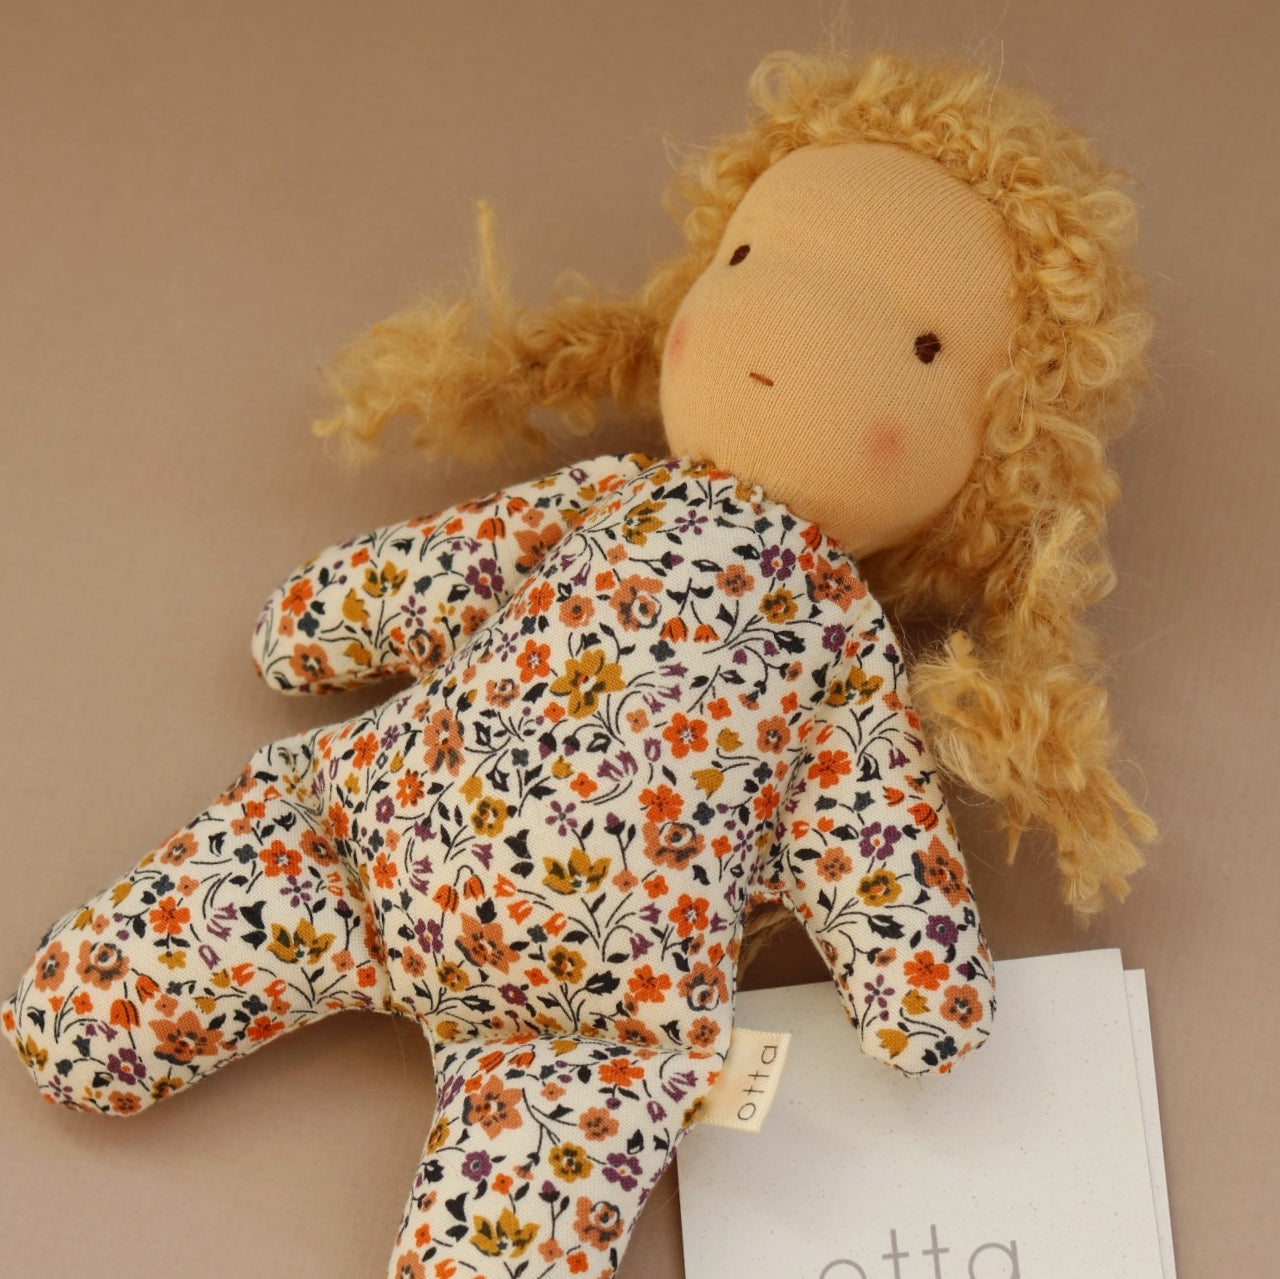 Otta Doll "Little Sister"